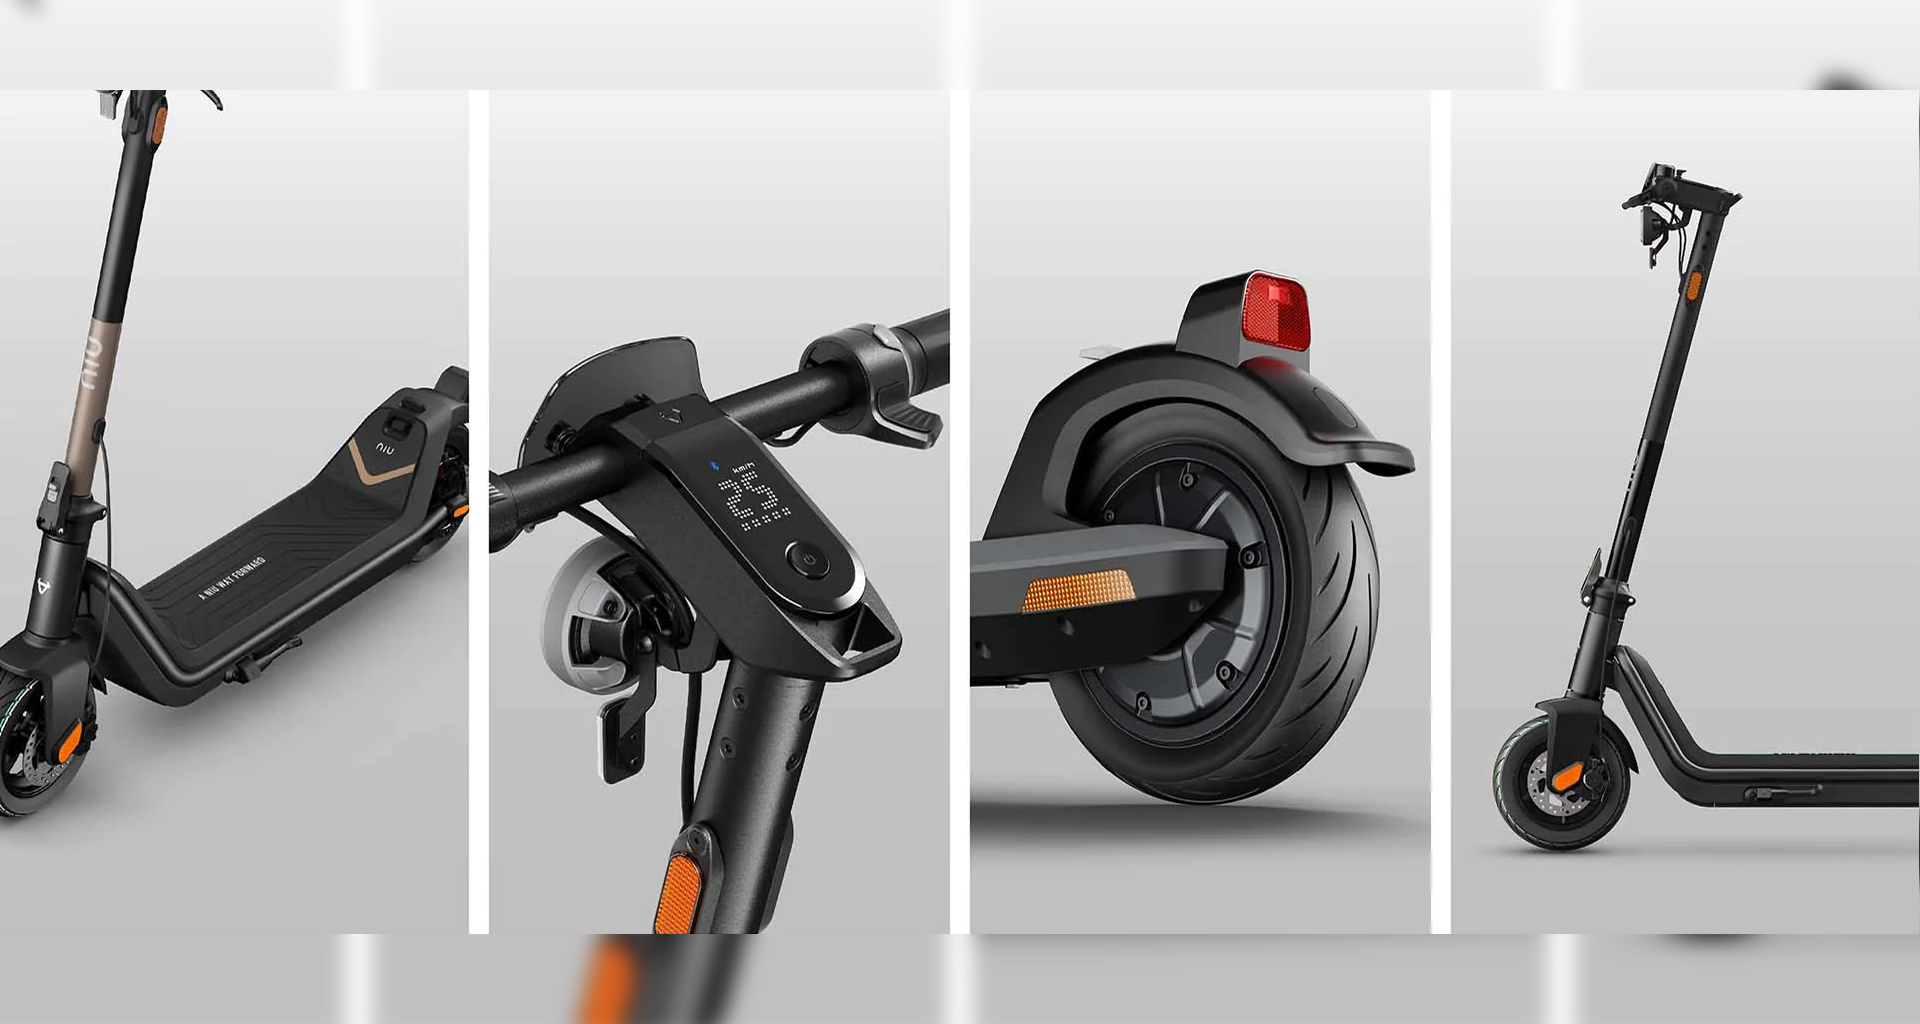 NIU design: Top 4 ergonomic kick scooter features